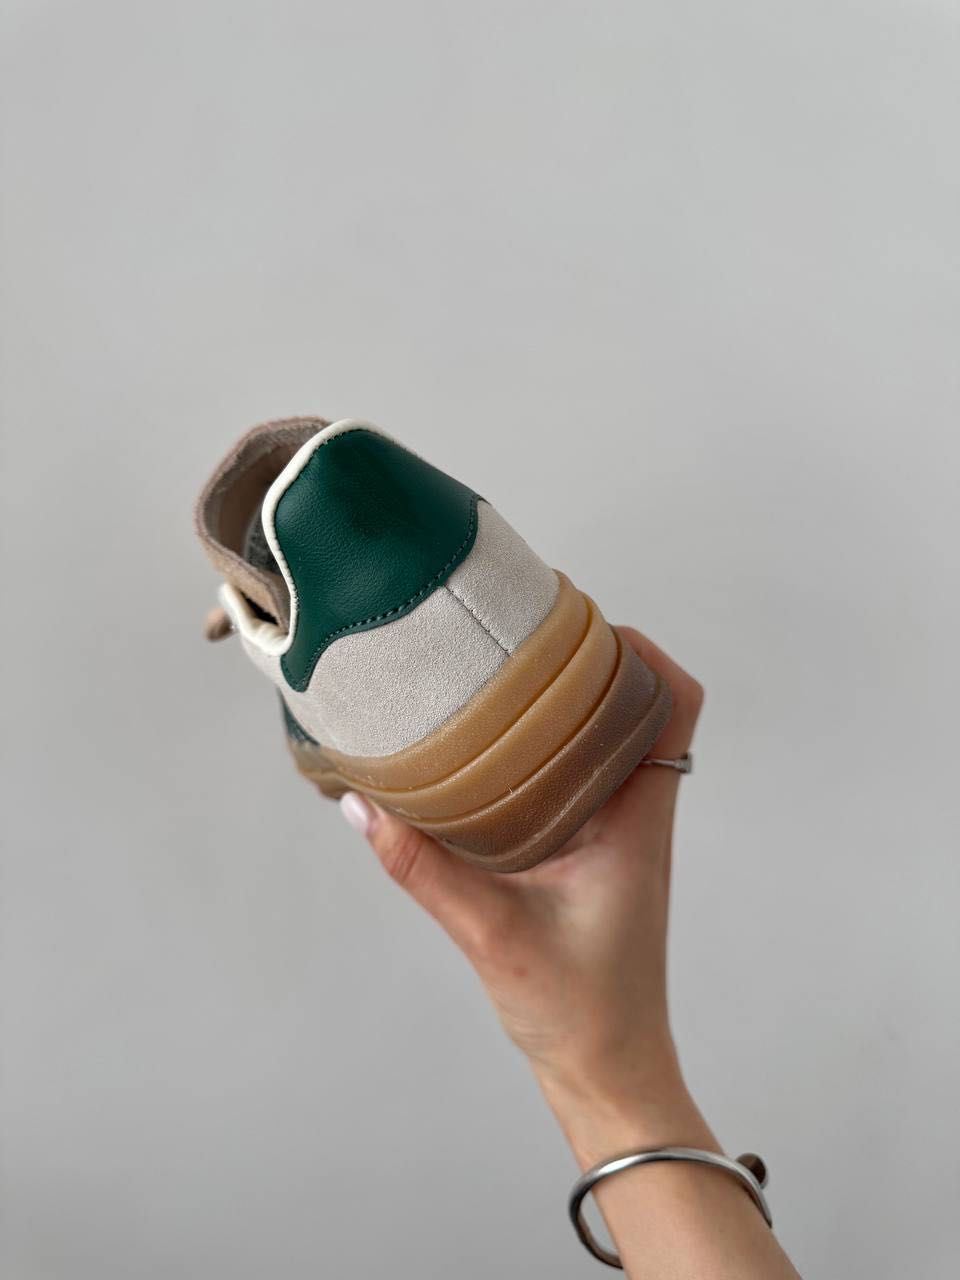 Кеди Adidas Gazelle Bold Platform Cream Green, кеды Адідас Газель Болд